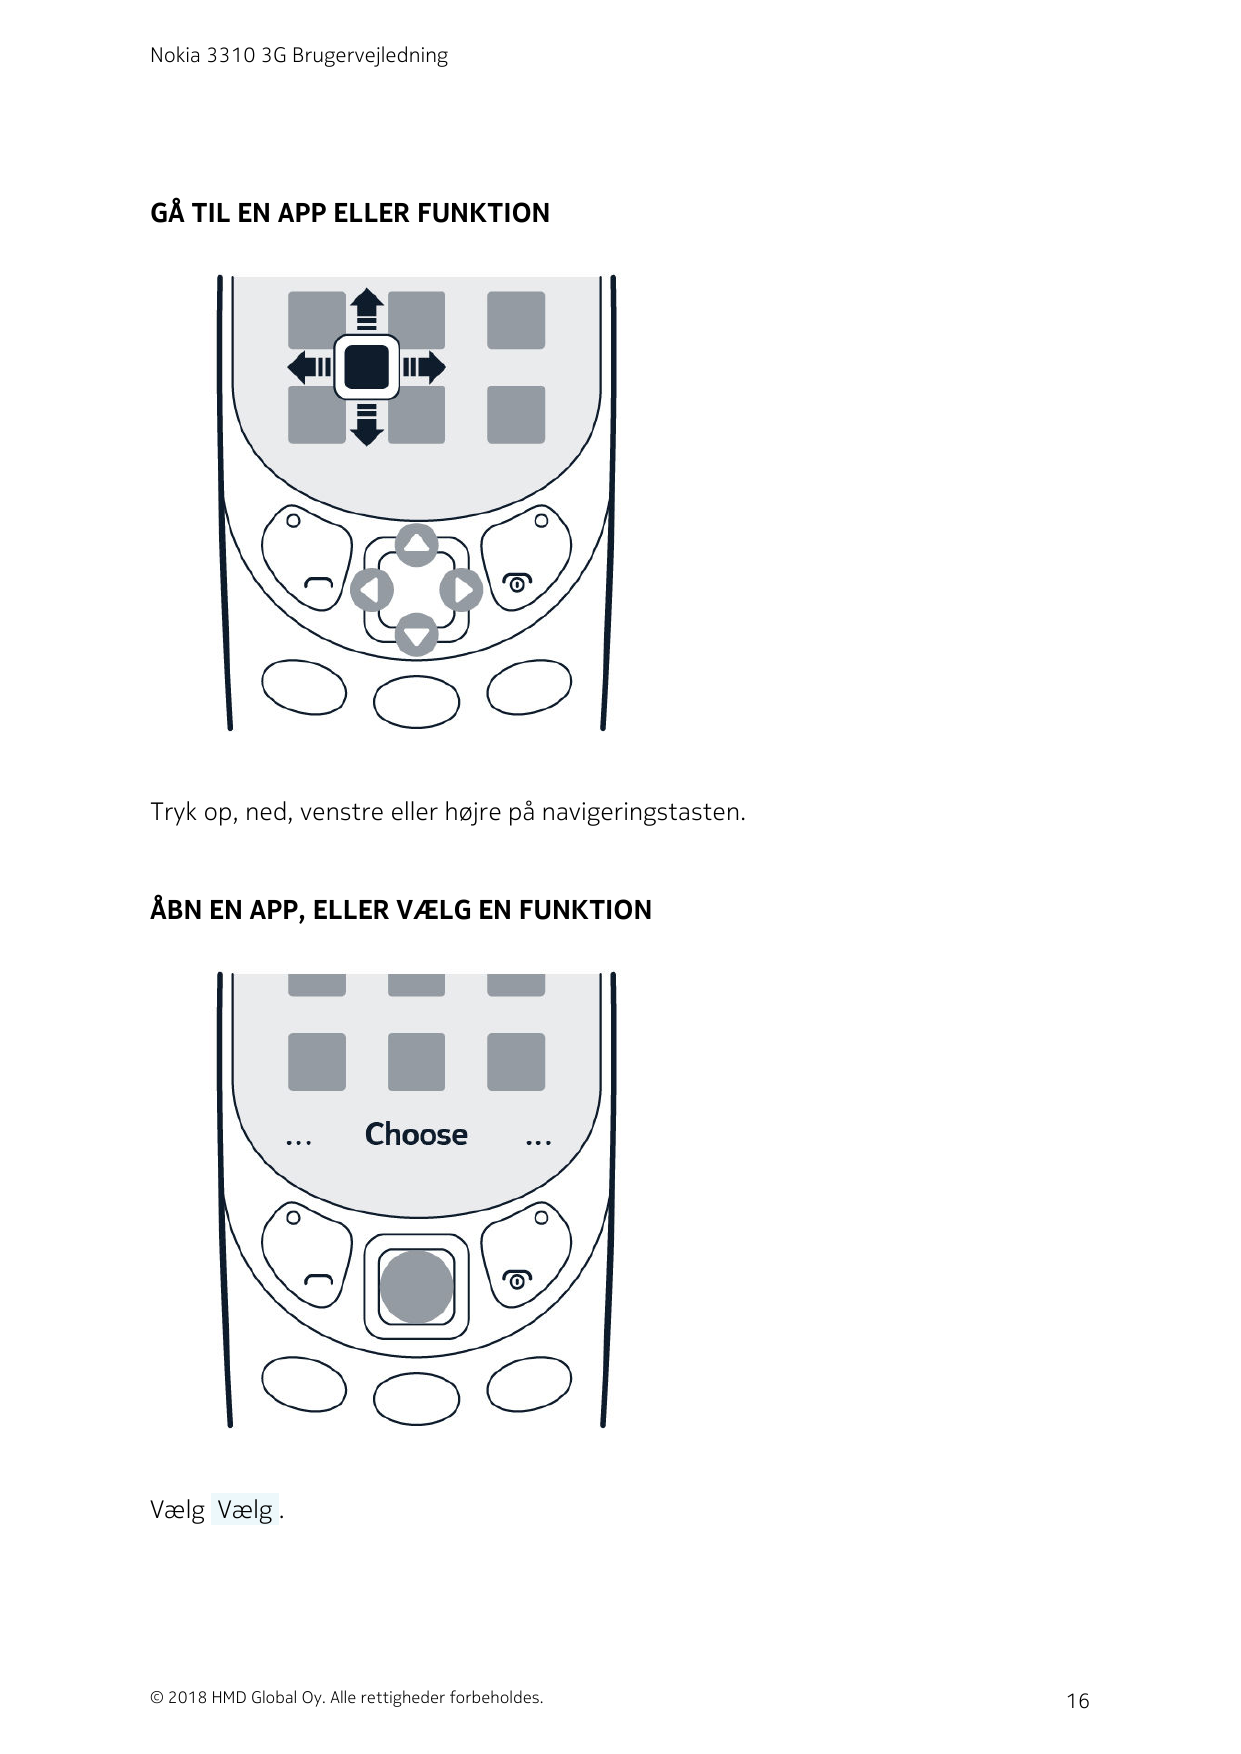 Nokia 3310 3G BrugervejledningGÅ TIL EN APP ELLER FUNKTIONTryk op, ned, venstre eller højre på navigeringstasten.ÅBN EN APP, ELL